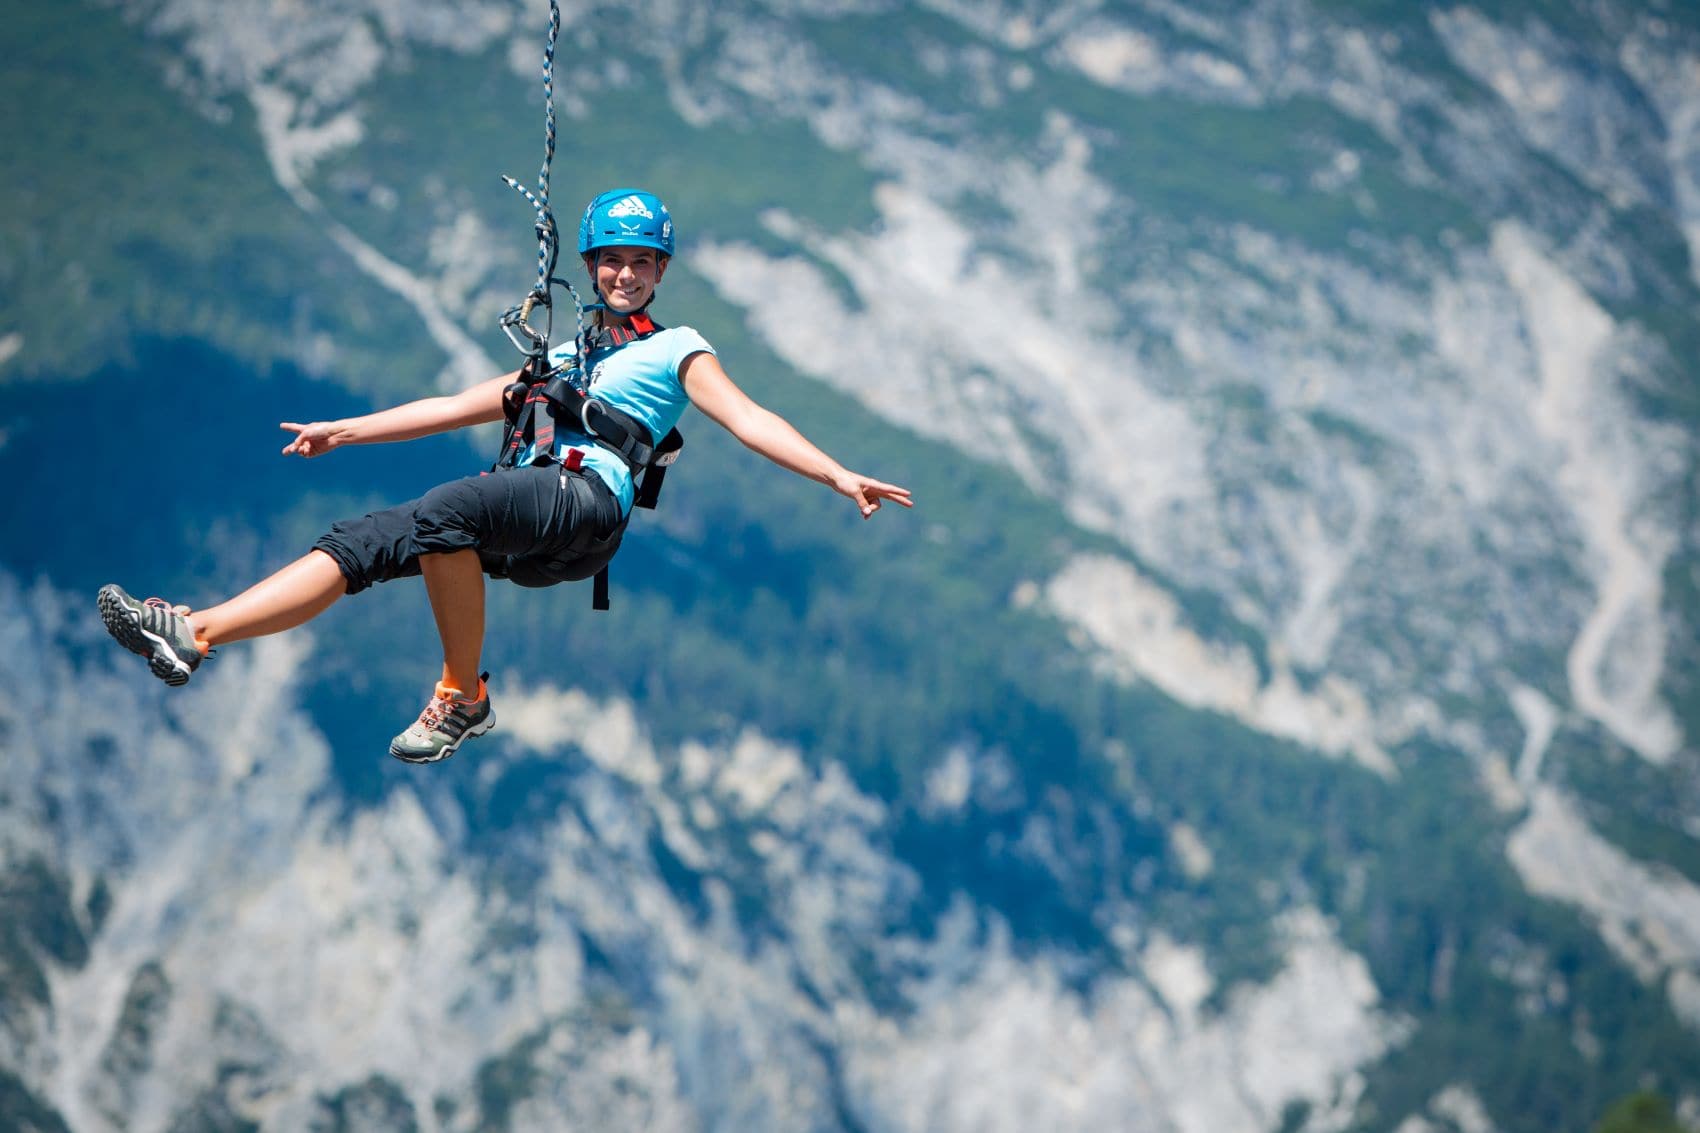 Frau an Giant Swing in Alpen 